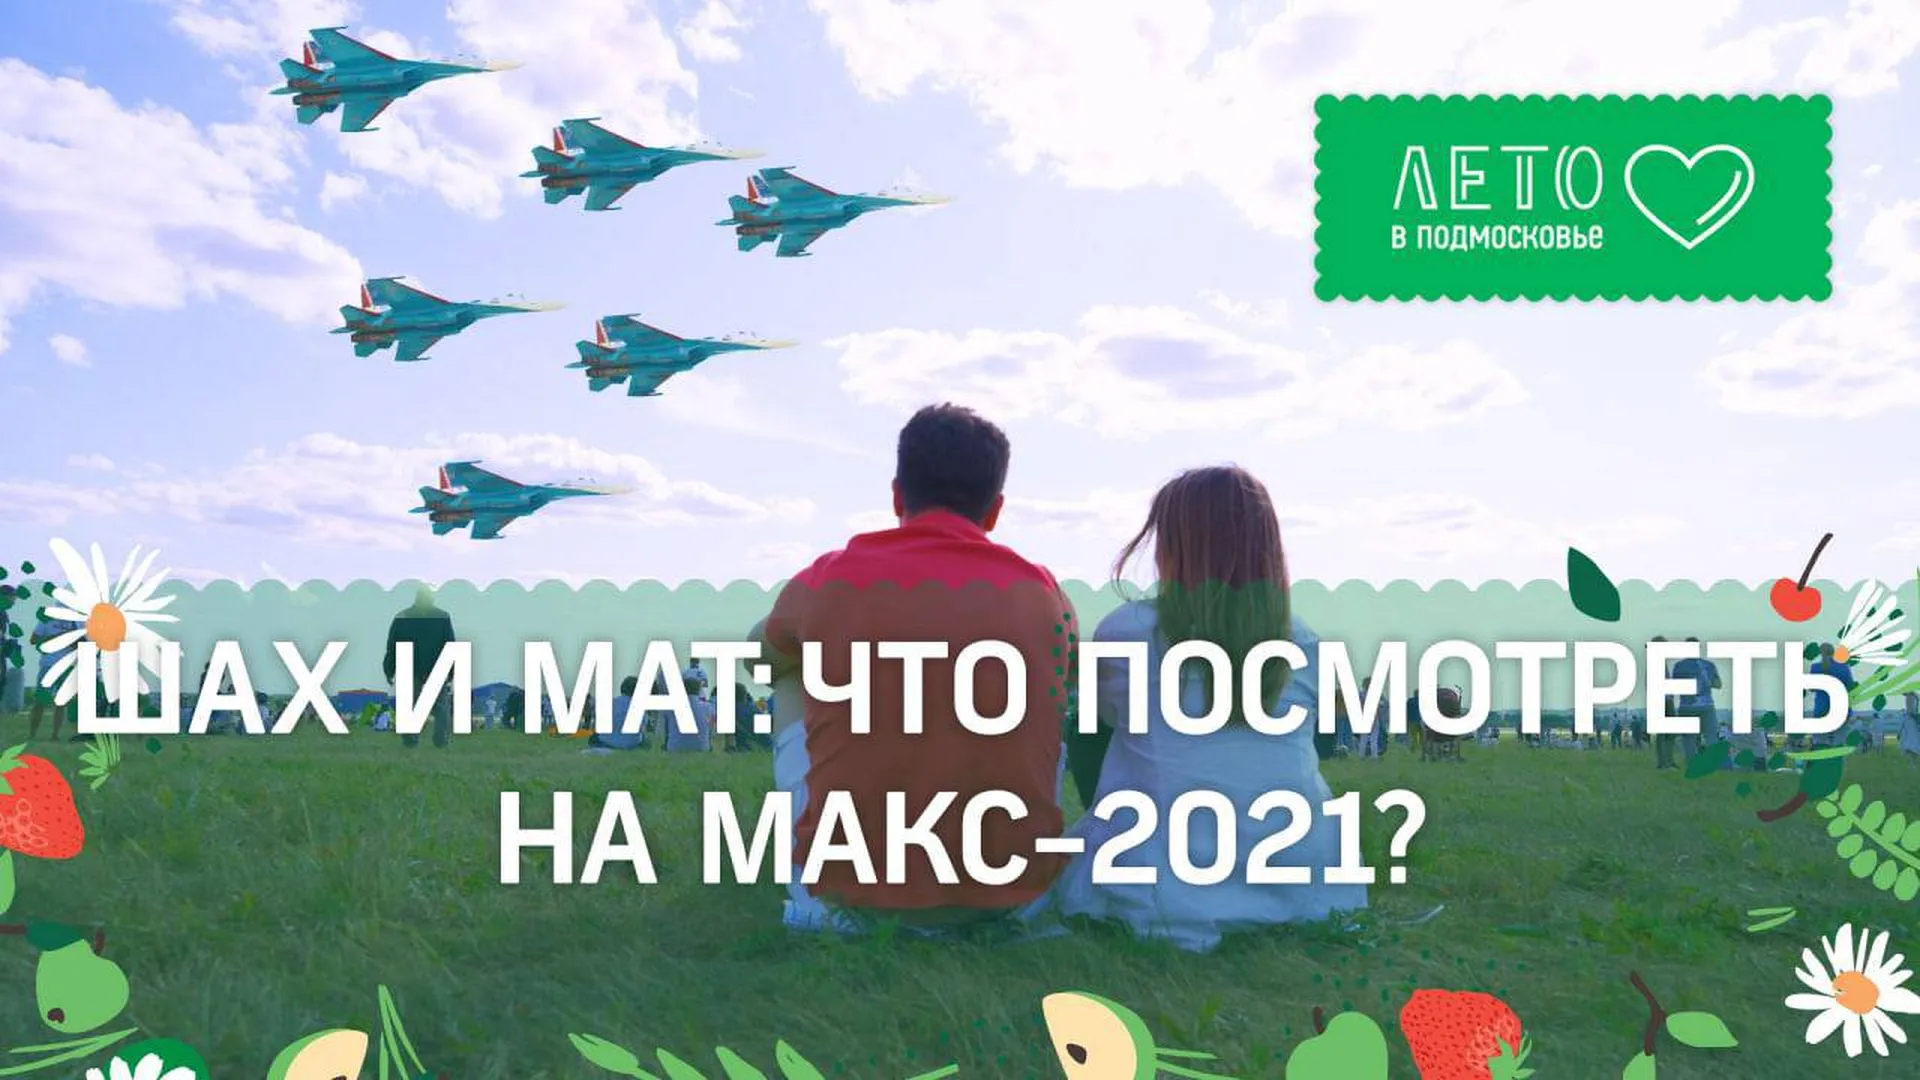 Почтовый беспилотник и новый российский истребитель. Что показали на МАКС-2021